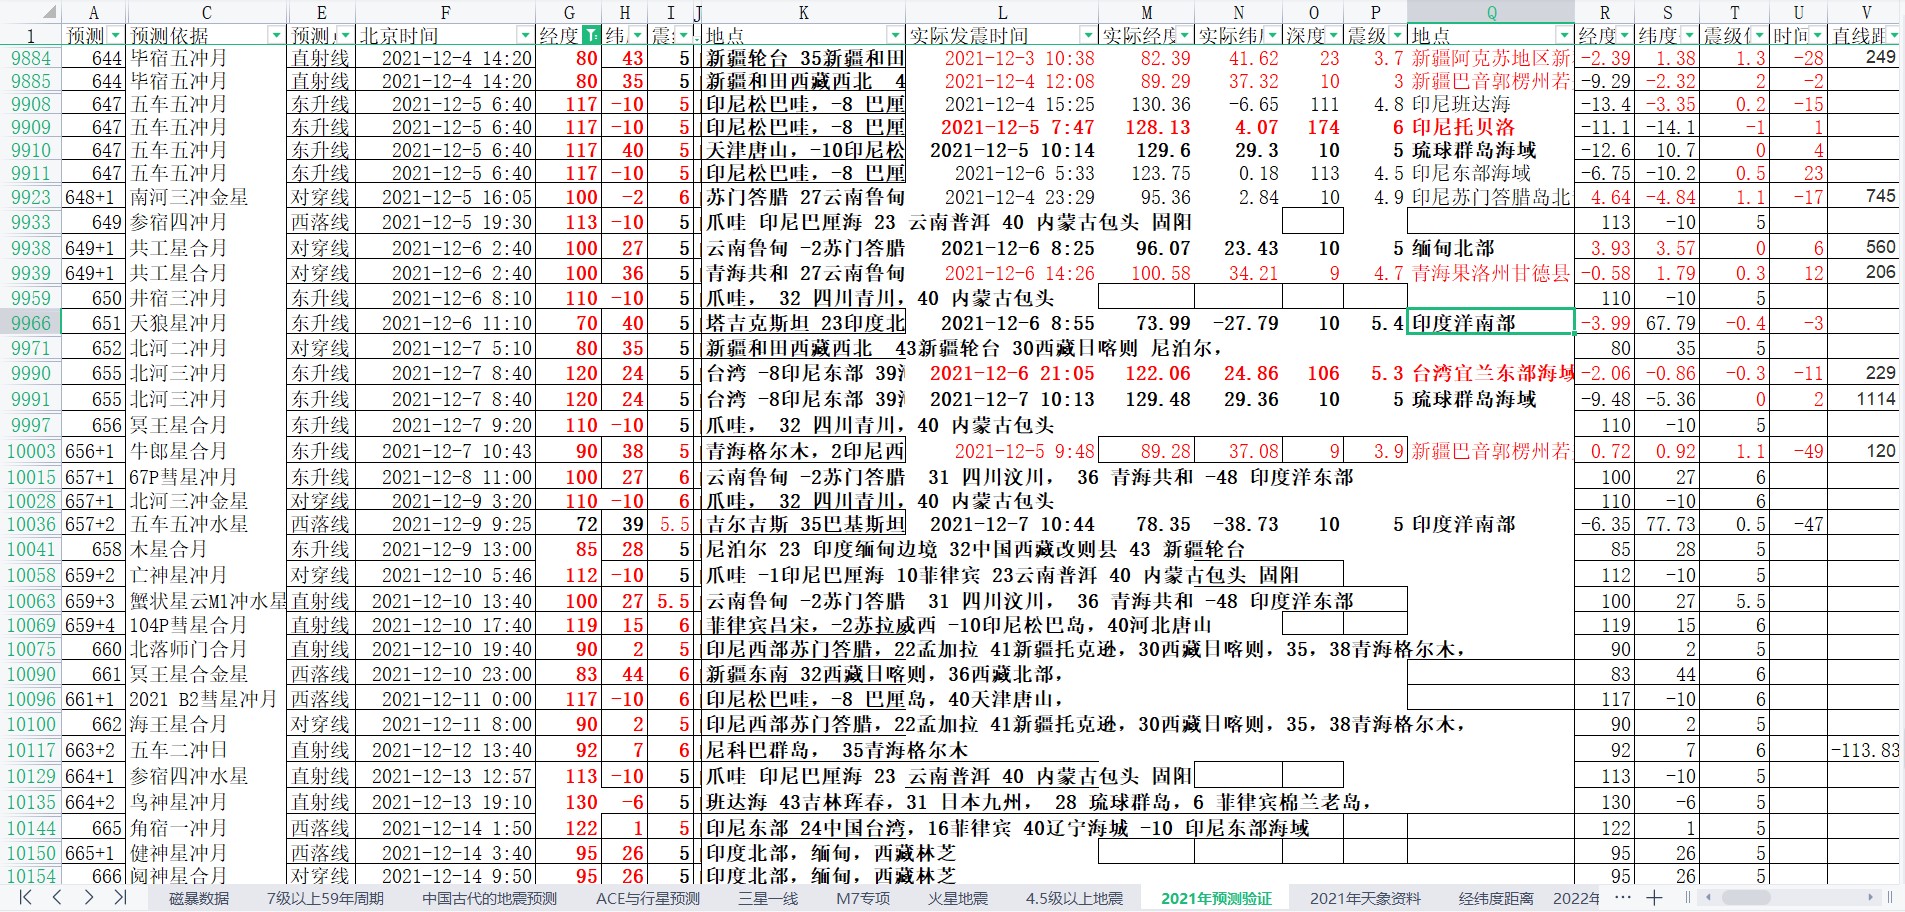 中国及周边区域地震预测验证2021年12月8-12月14日.jpg